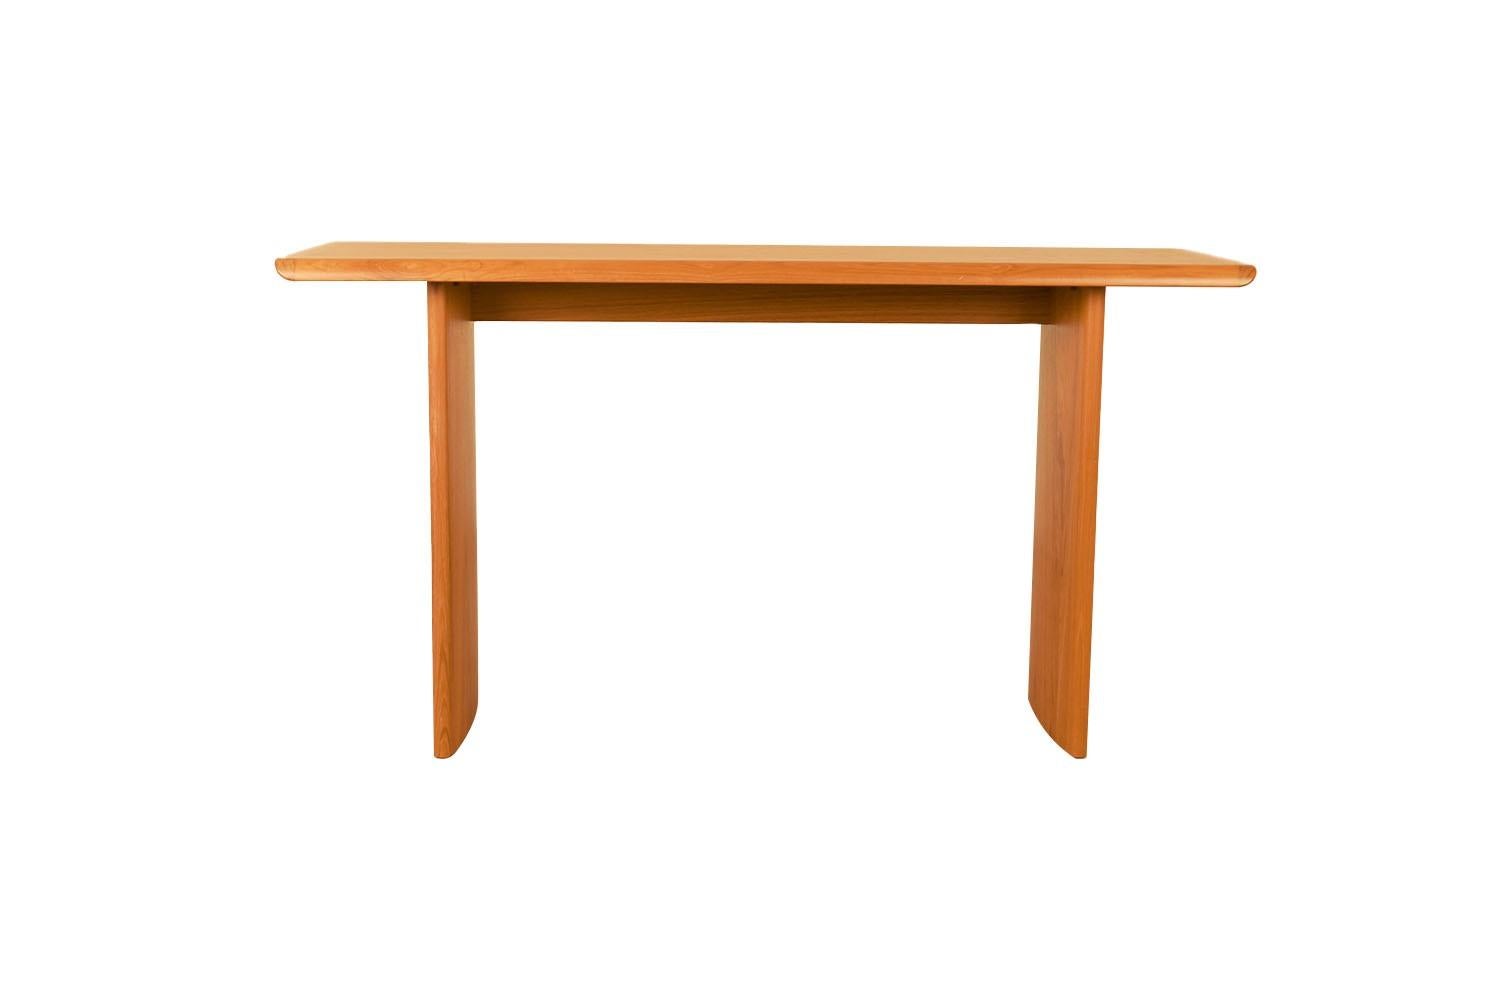 Console ou table de canapé en teck, belle et élégante, de style moderne danois. Le plateau rectangulaire magnifiquement grainé repose sur une base sculptée en retrait, créant un effet 